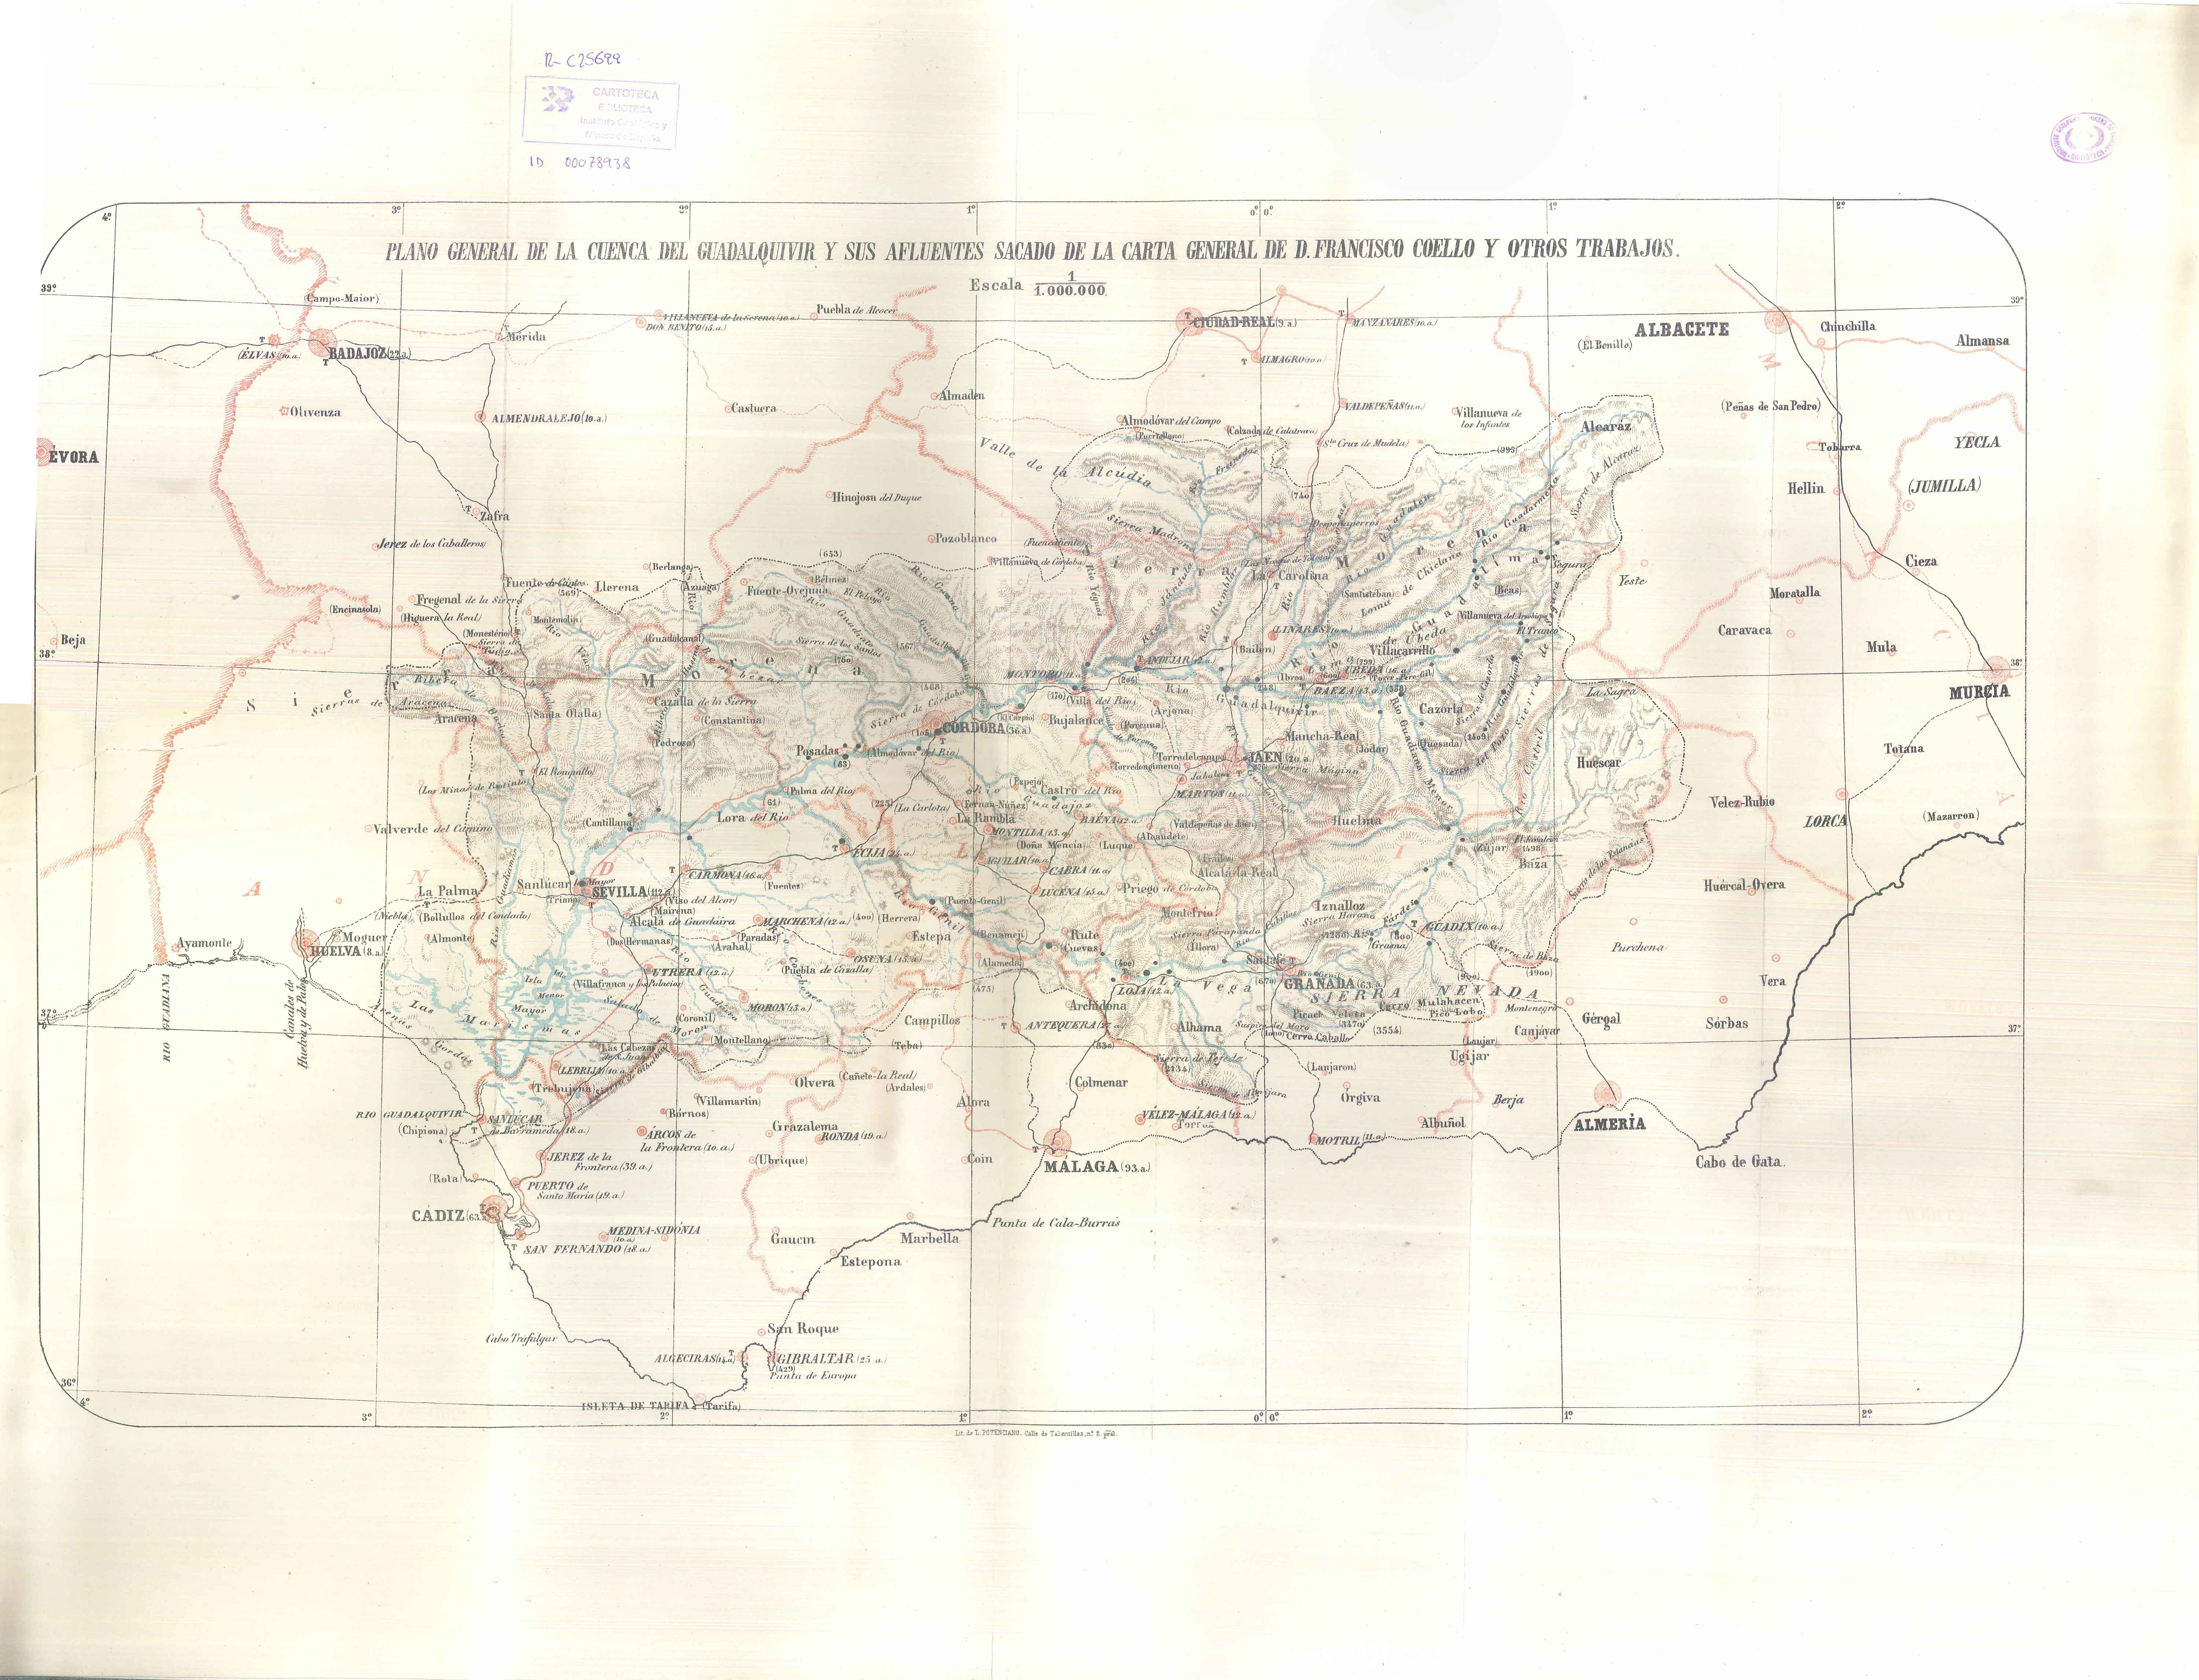 Plano general de la cuenca del Guadalquivir y sus afluentes...